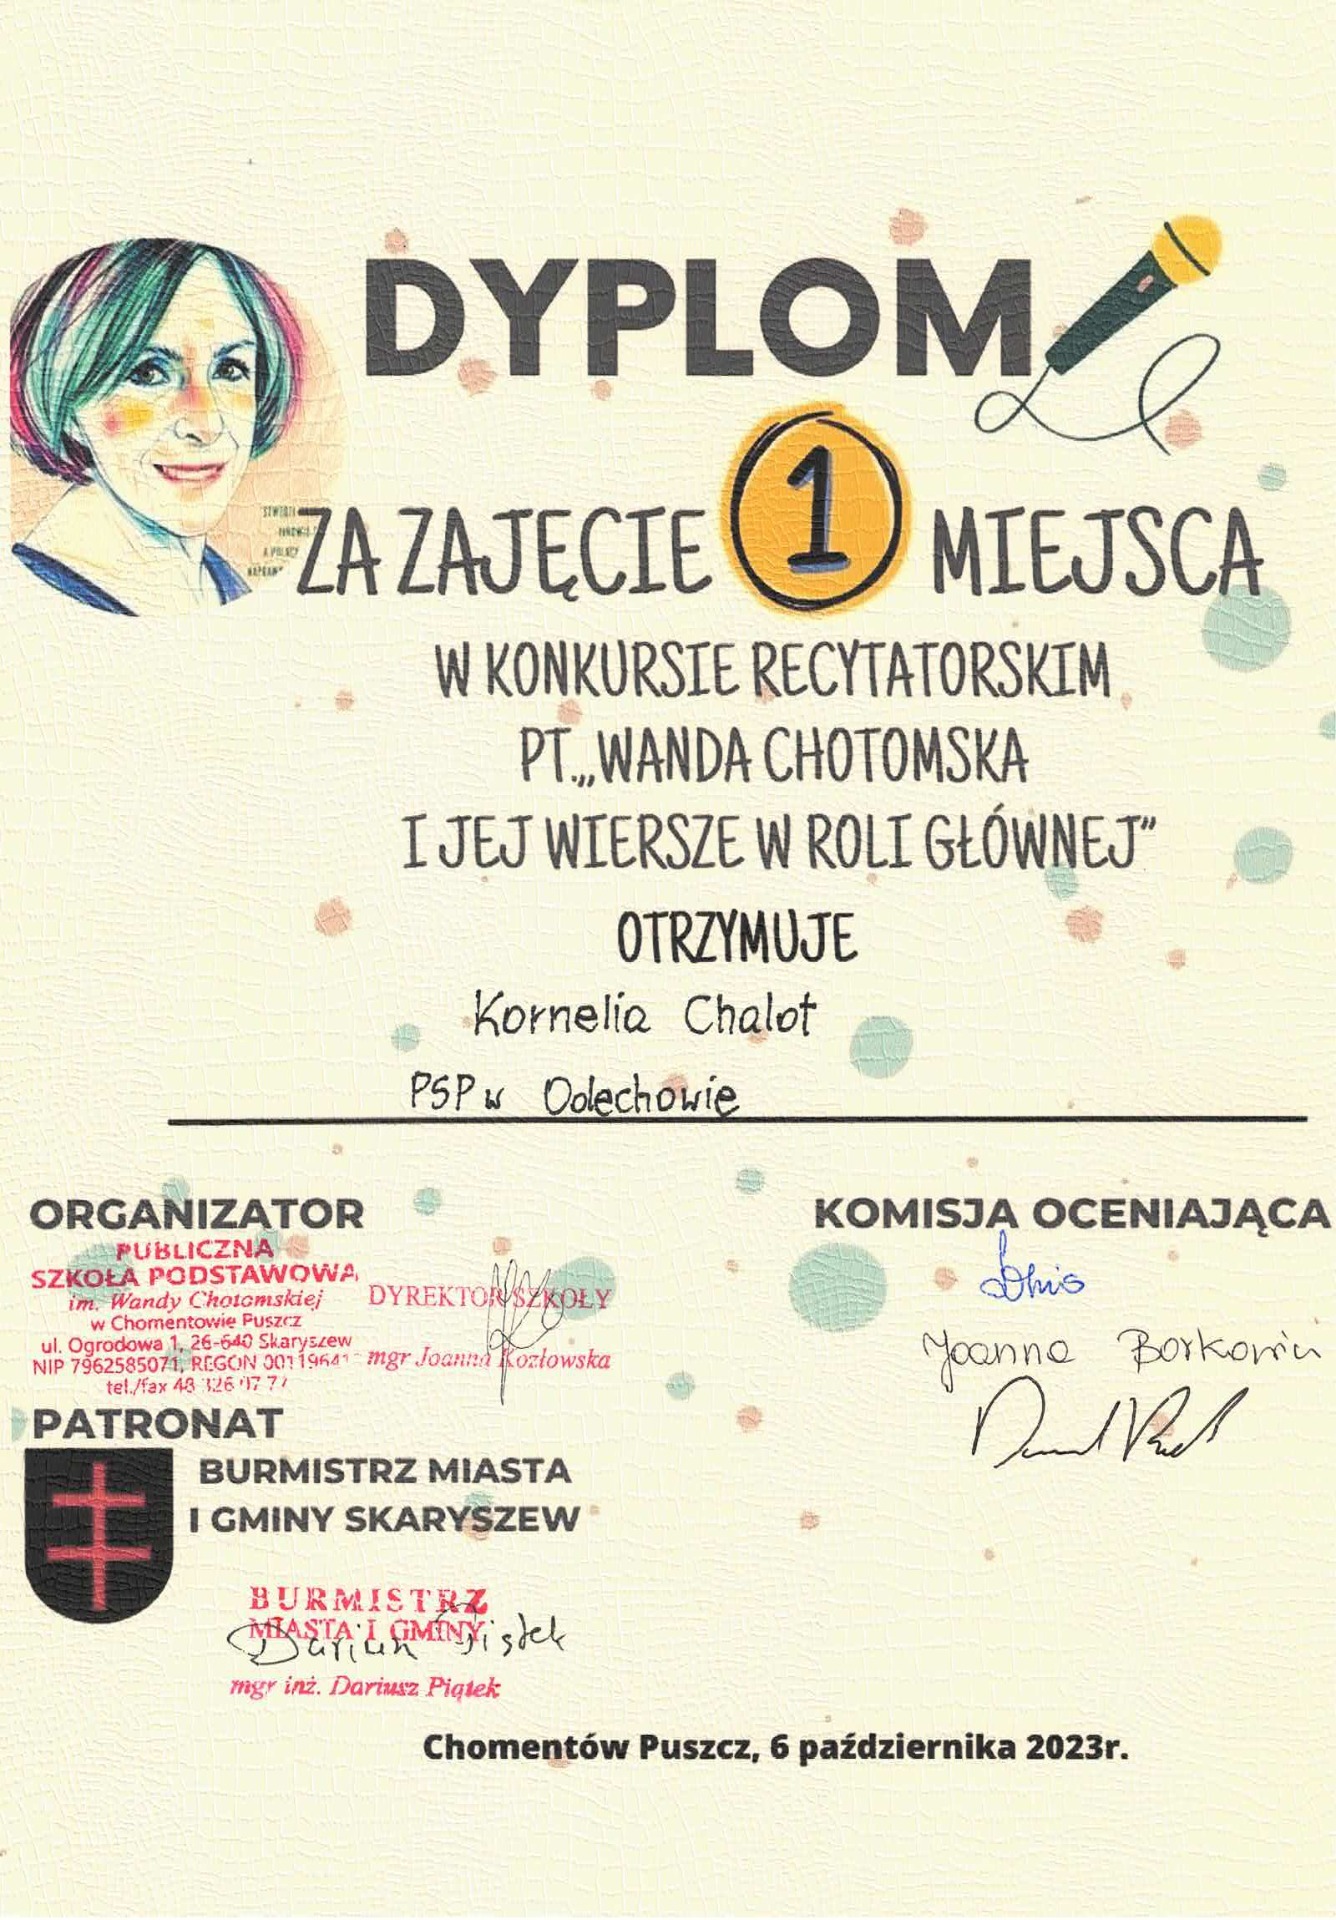 Grafika przedstawia dyplom za zajęcie pierwszego miejsca w konkursie recytatorskim pt. Wanda Chotomska i jej wiersze w roli głównej dla uczennicy Kornelii Chalot.